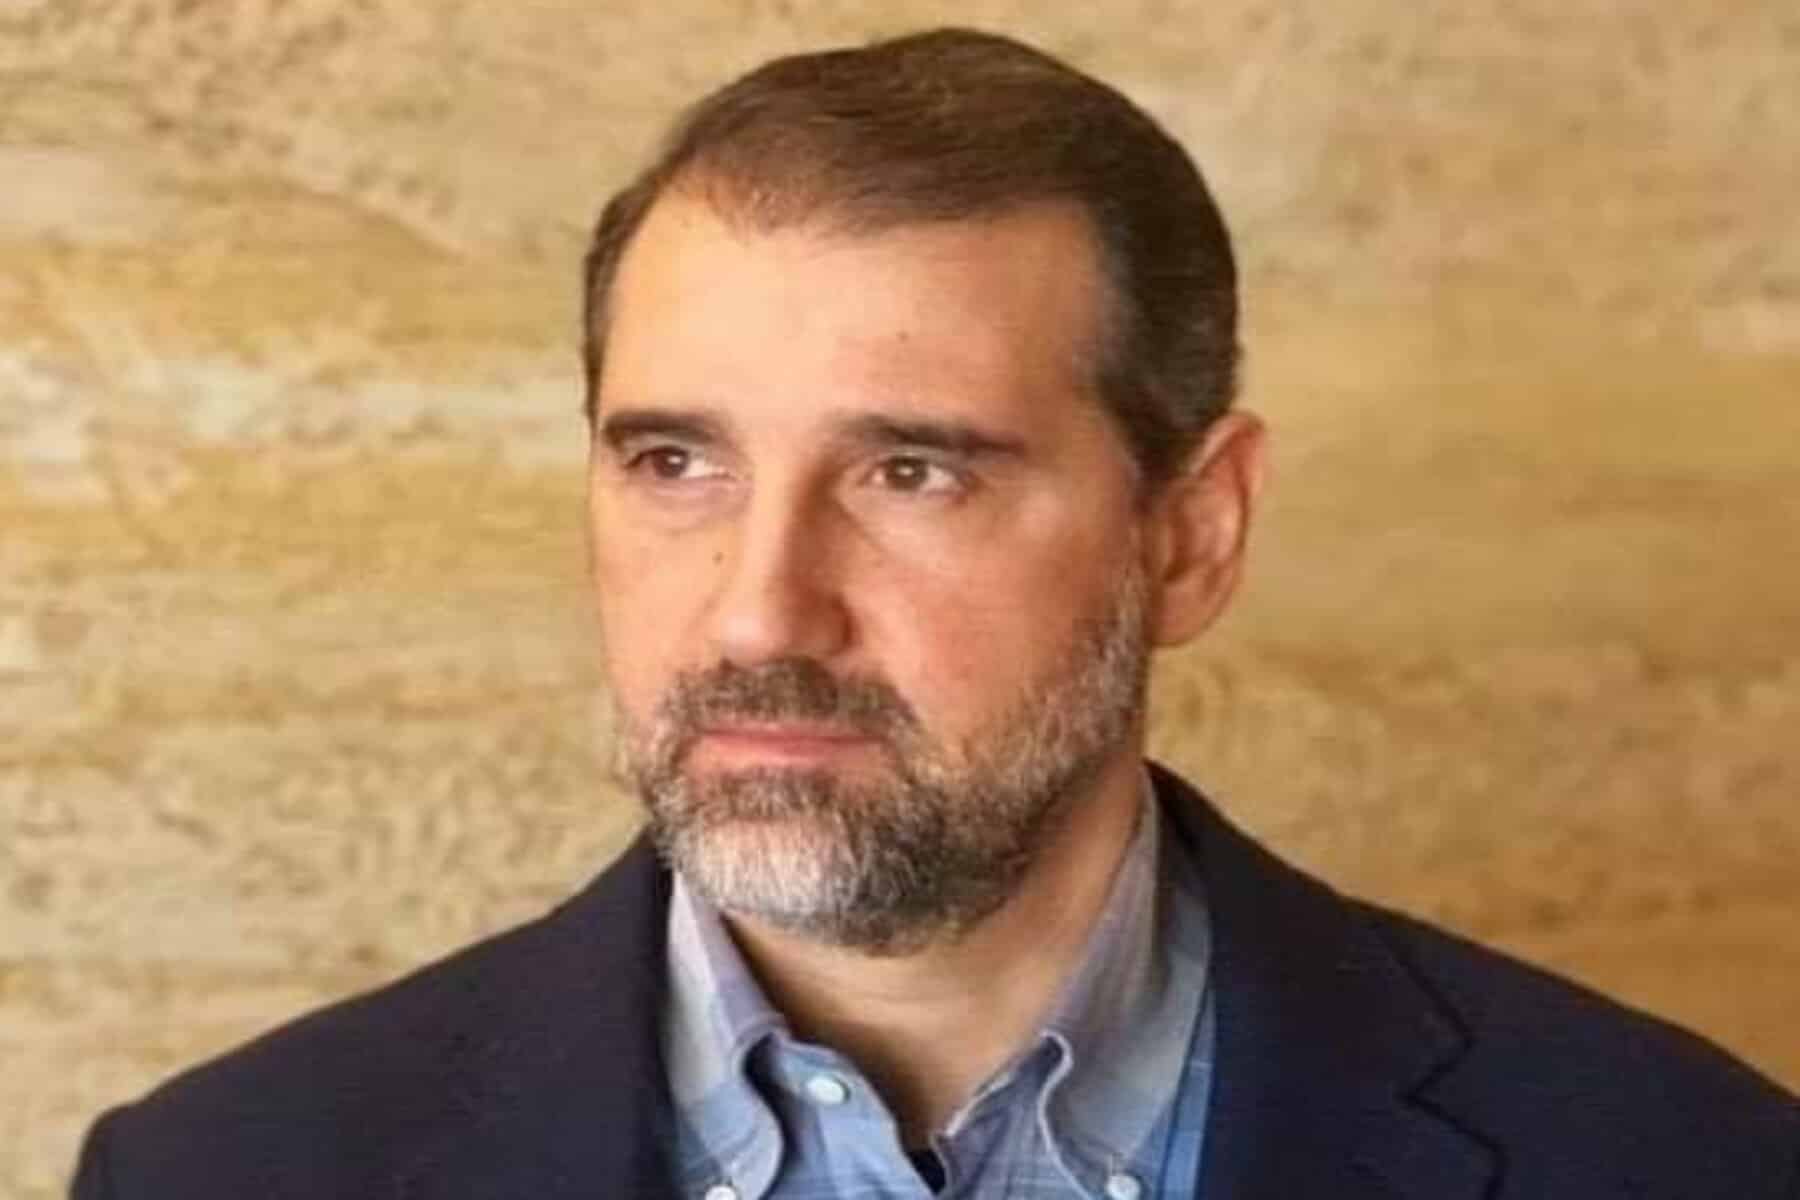  alarabtrend.com أثار رجل الأعمال السوري وابن خال بشار الأسد سخرية واسعة من رواد منصات التواصل 